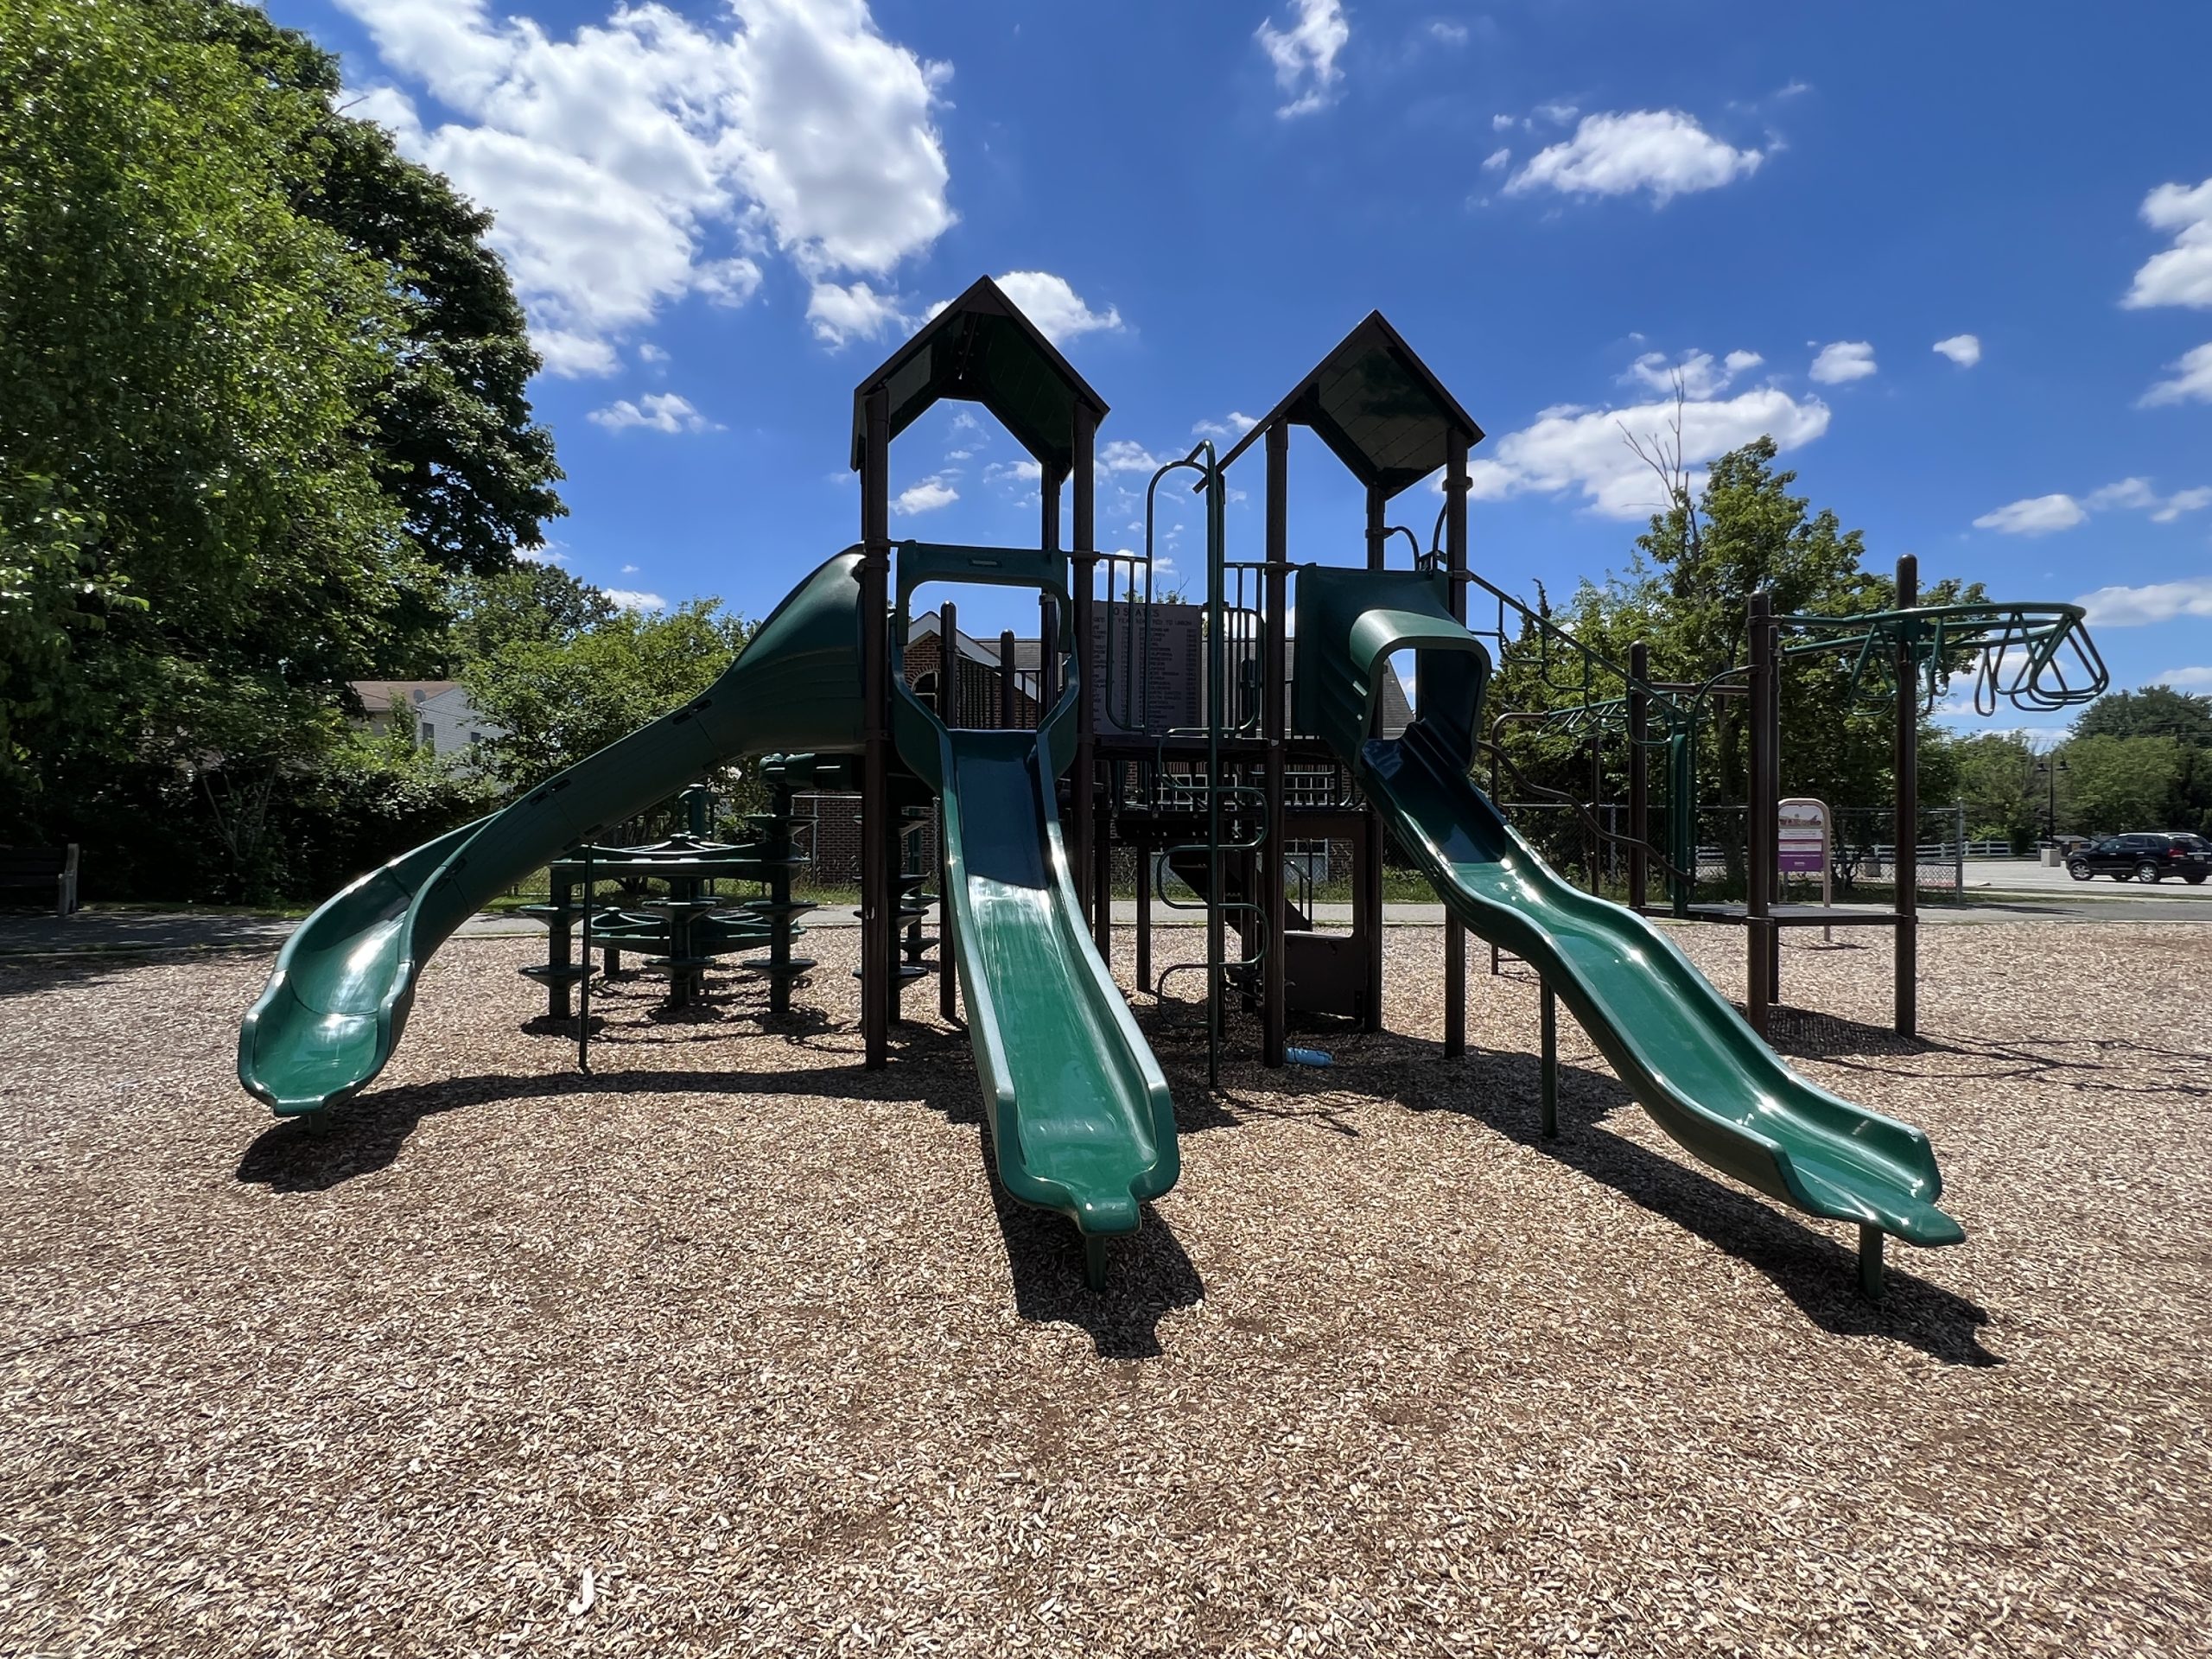 David B. Crabiel Park Playground in Milltown NJ 3 slides horizontal